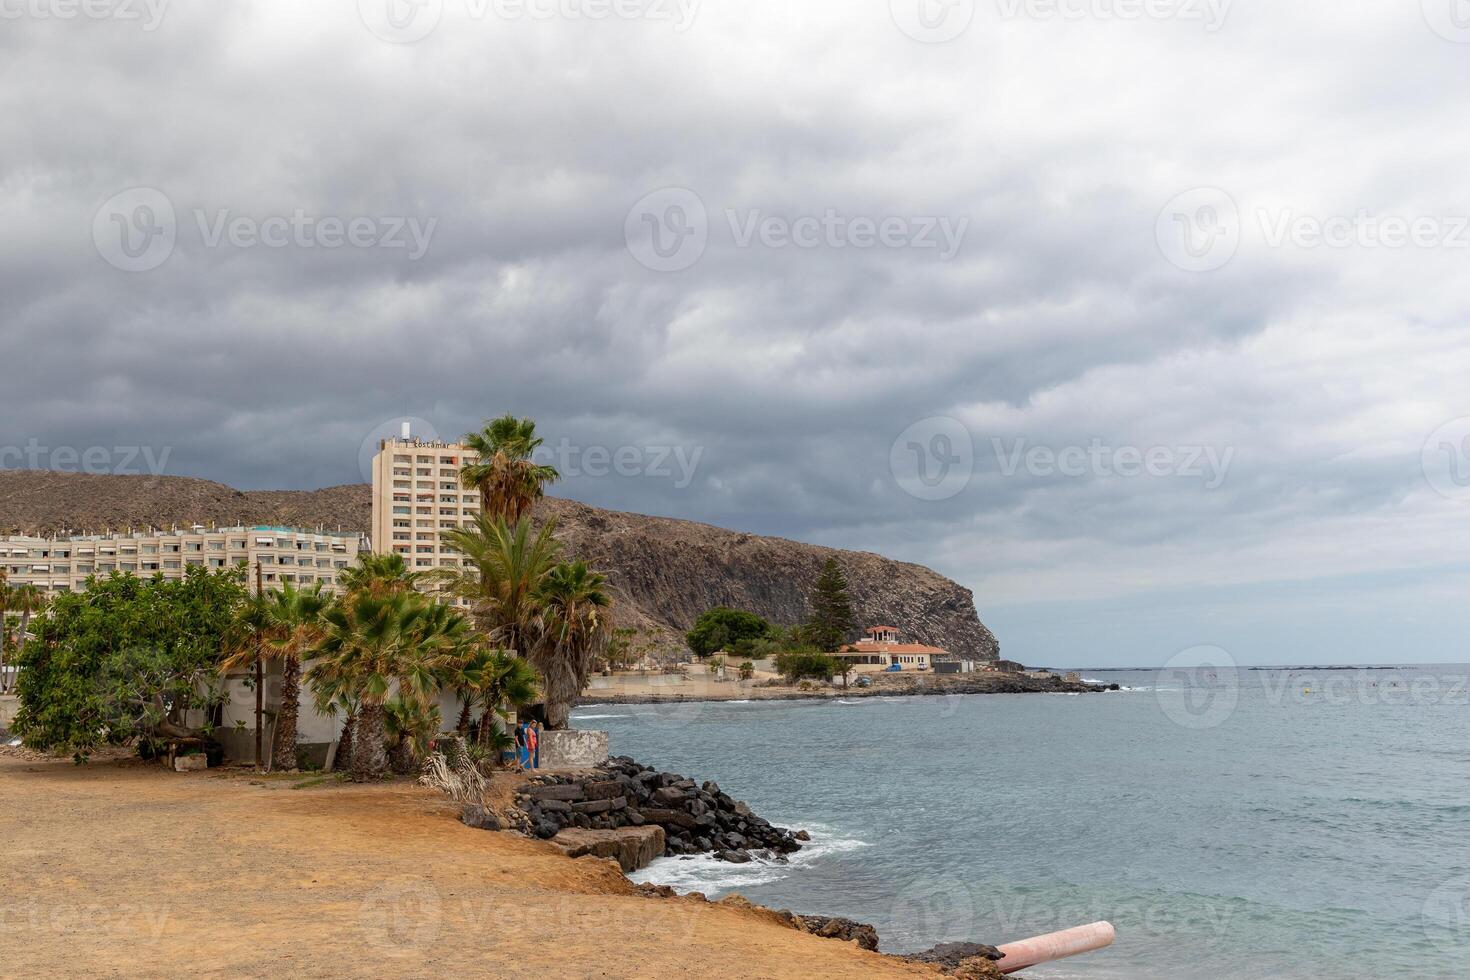 kust landskap med strand, handflatan träd, och hotell mot en bakgrund av klippor under en molnig himmel i los cristianos, teneriffa. foto